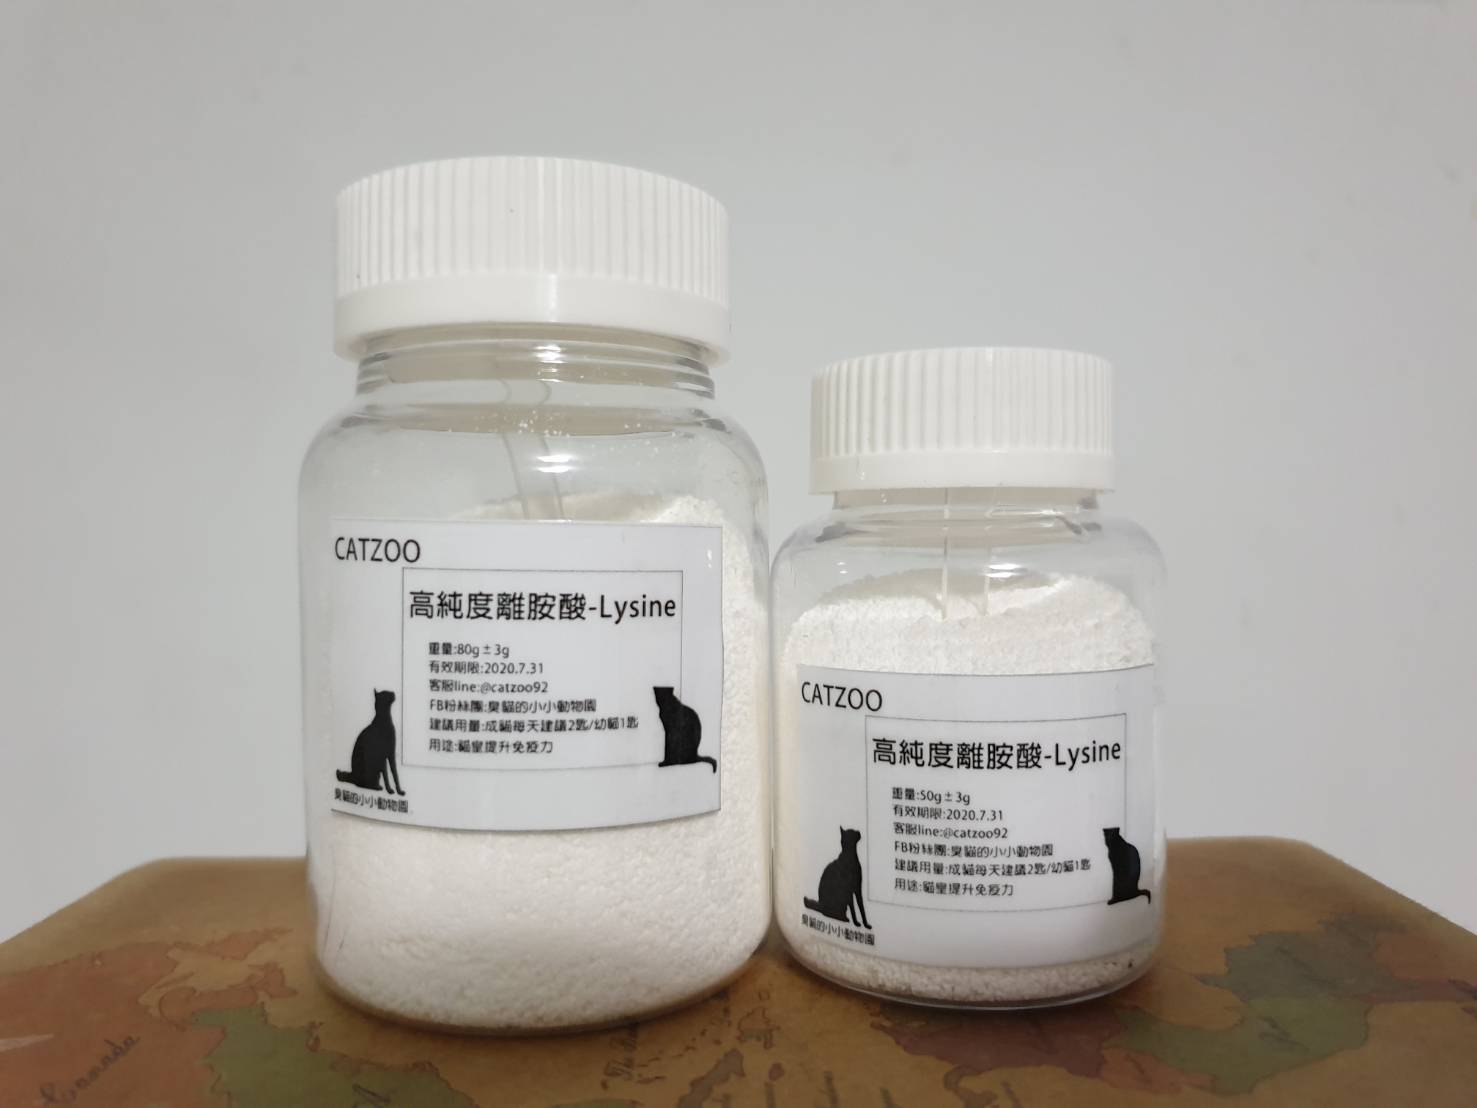 臭貓動物園-高純度離胺酸
catzoo-Lysine